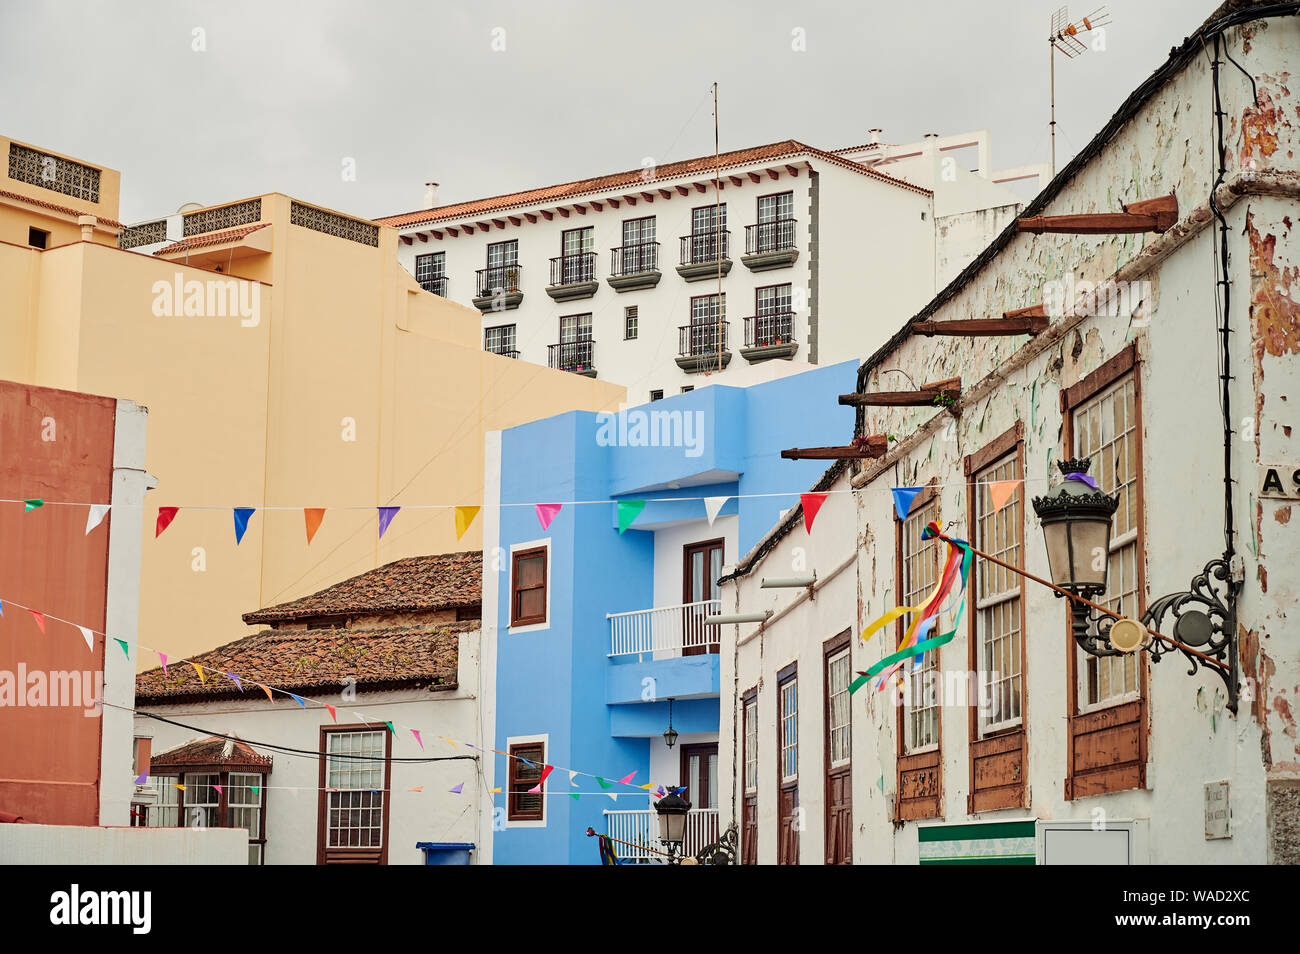 Einfache Äußere des bunten Häusern mit Dächern und Balkonen auf authentischen Straße mit Flagge Girlanden in Teneriffa, Spanien eingerichtet Stockfoto